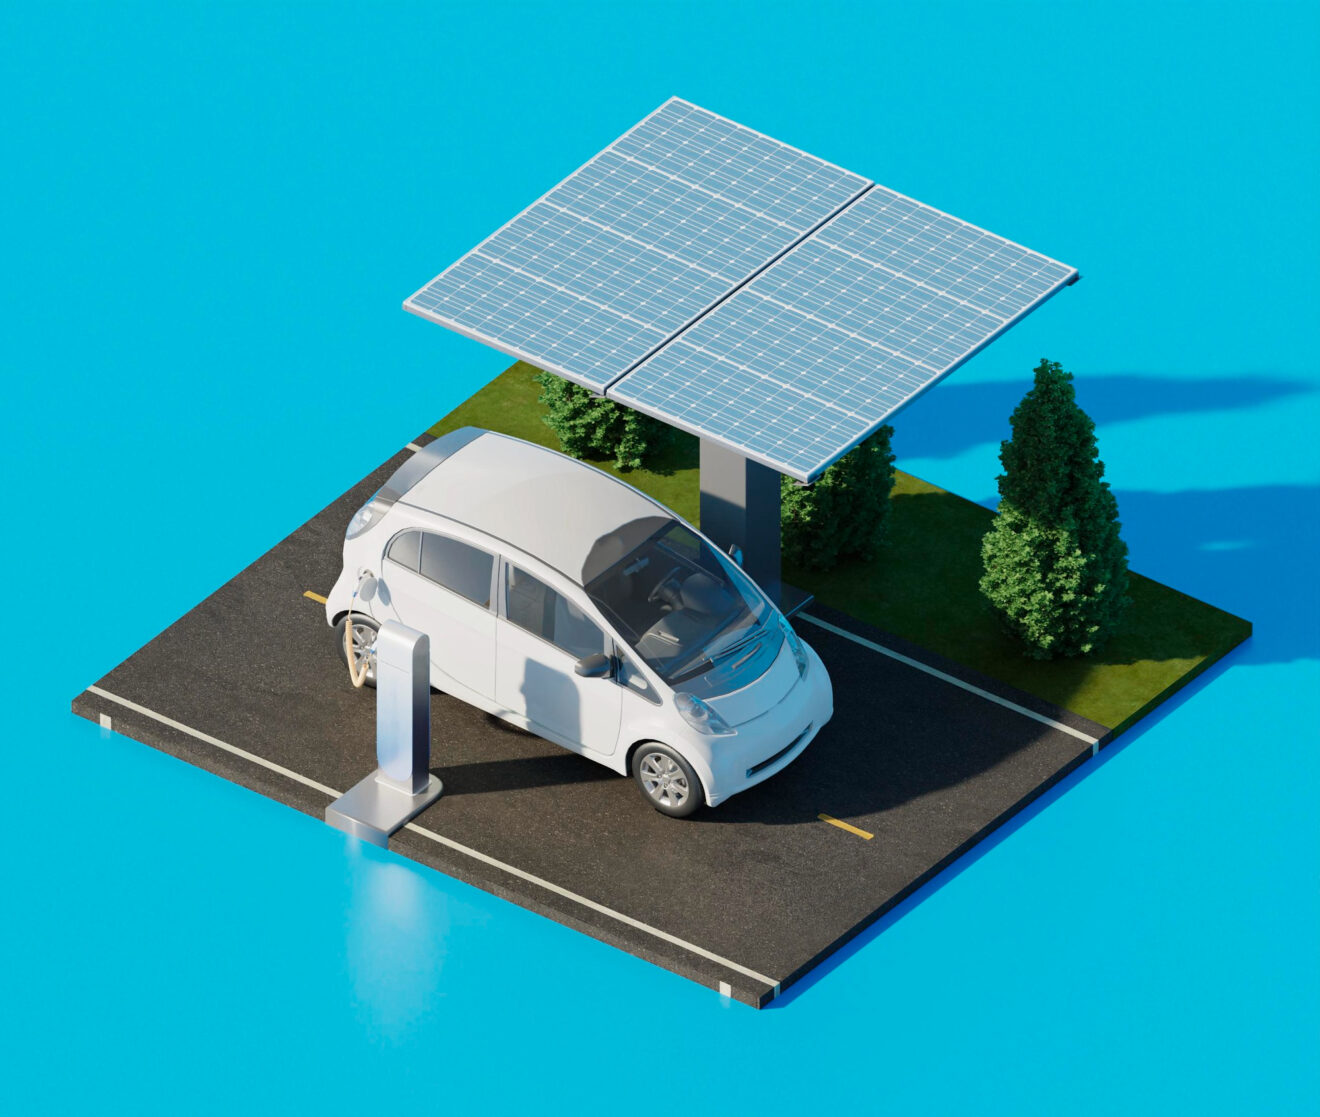 Should You Get a Solar Carport in 2023?